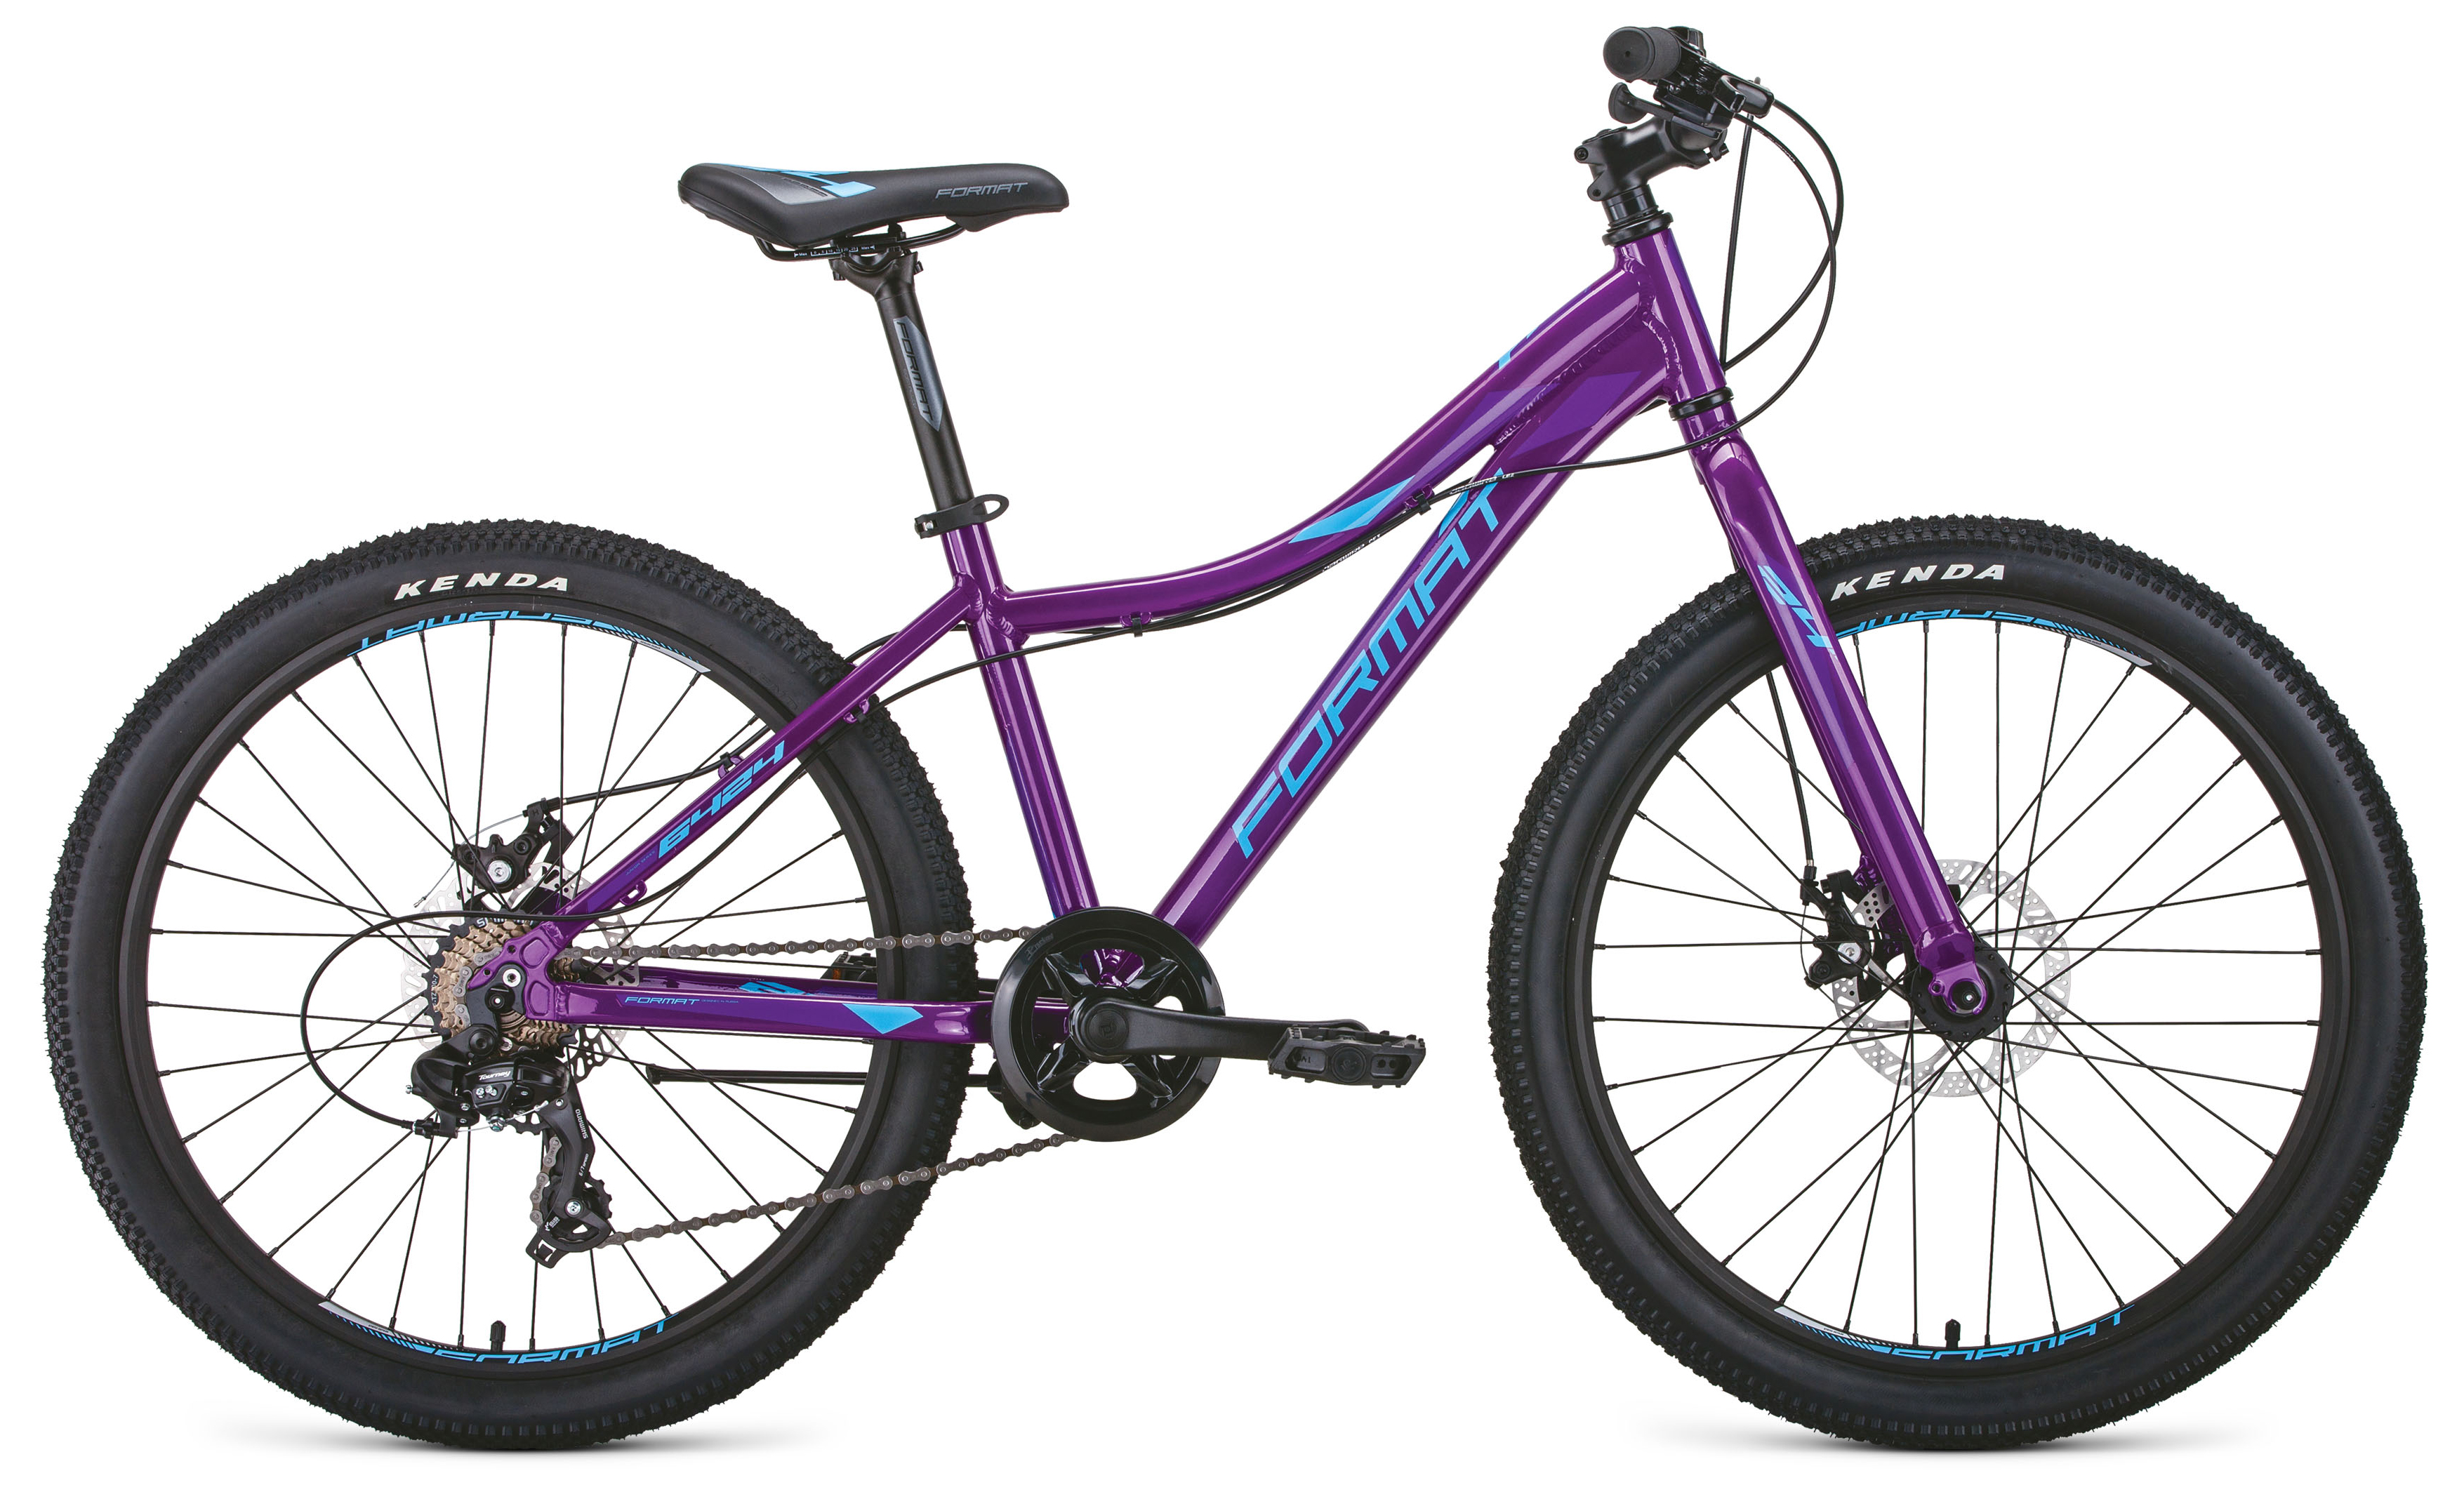  Велосипед Format 6424 2020